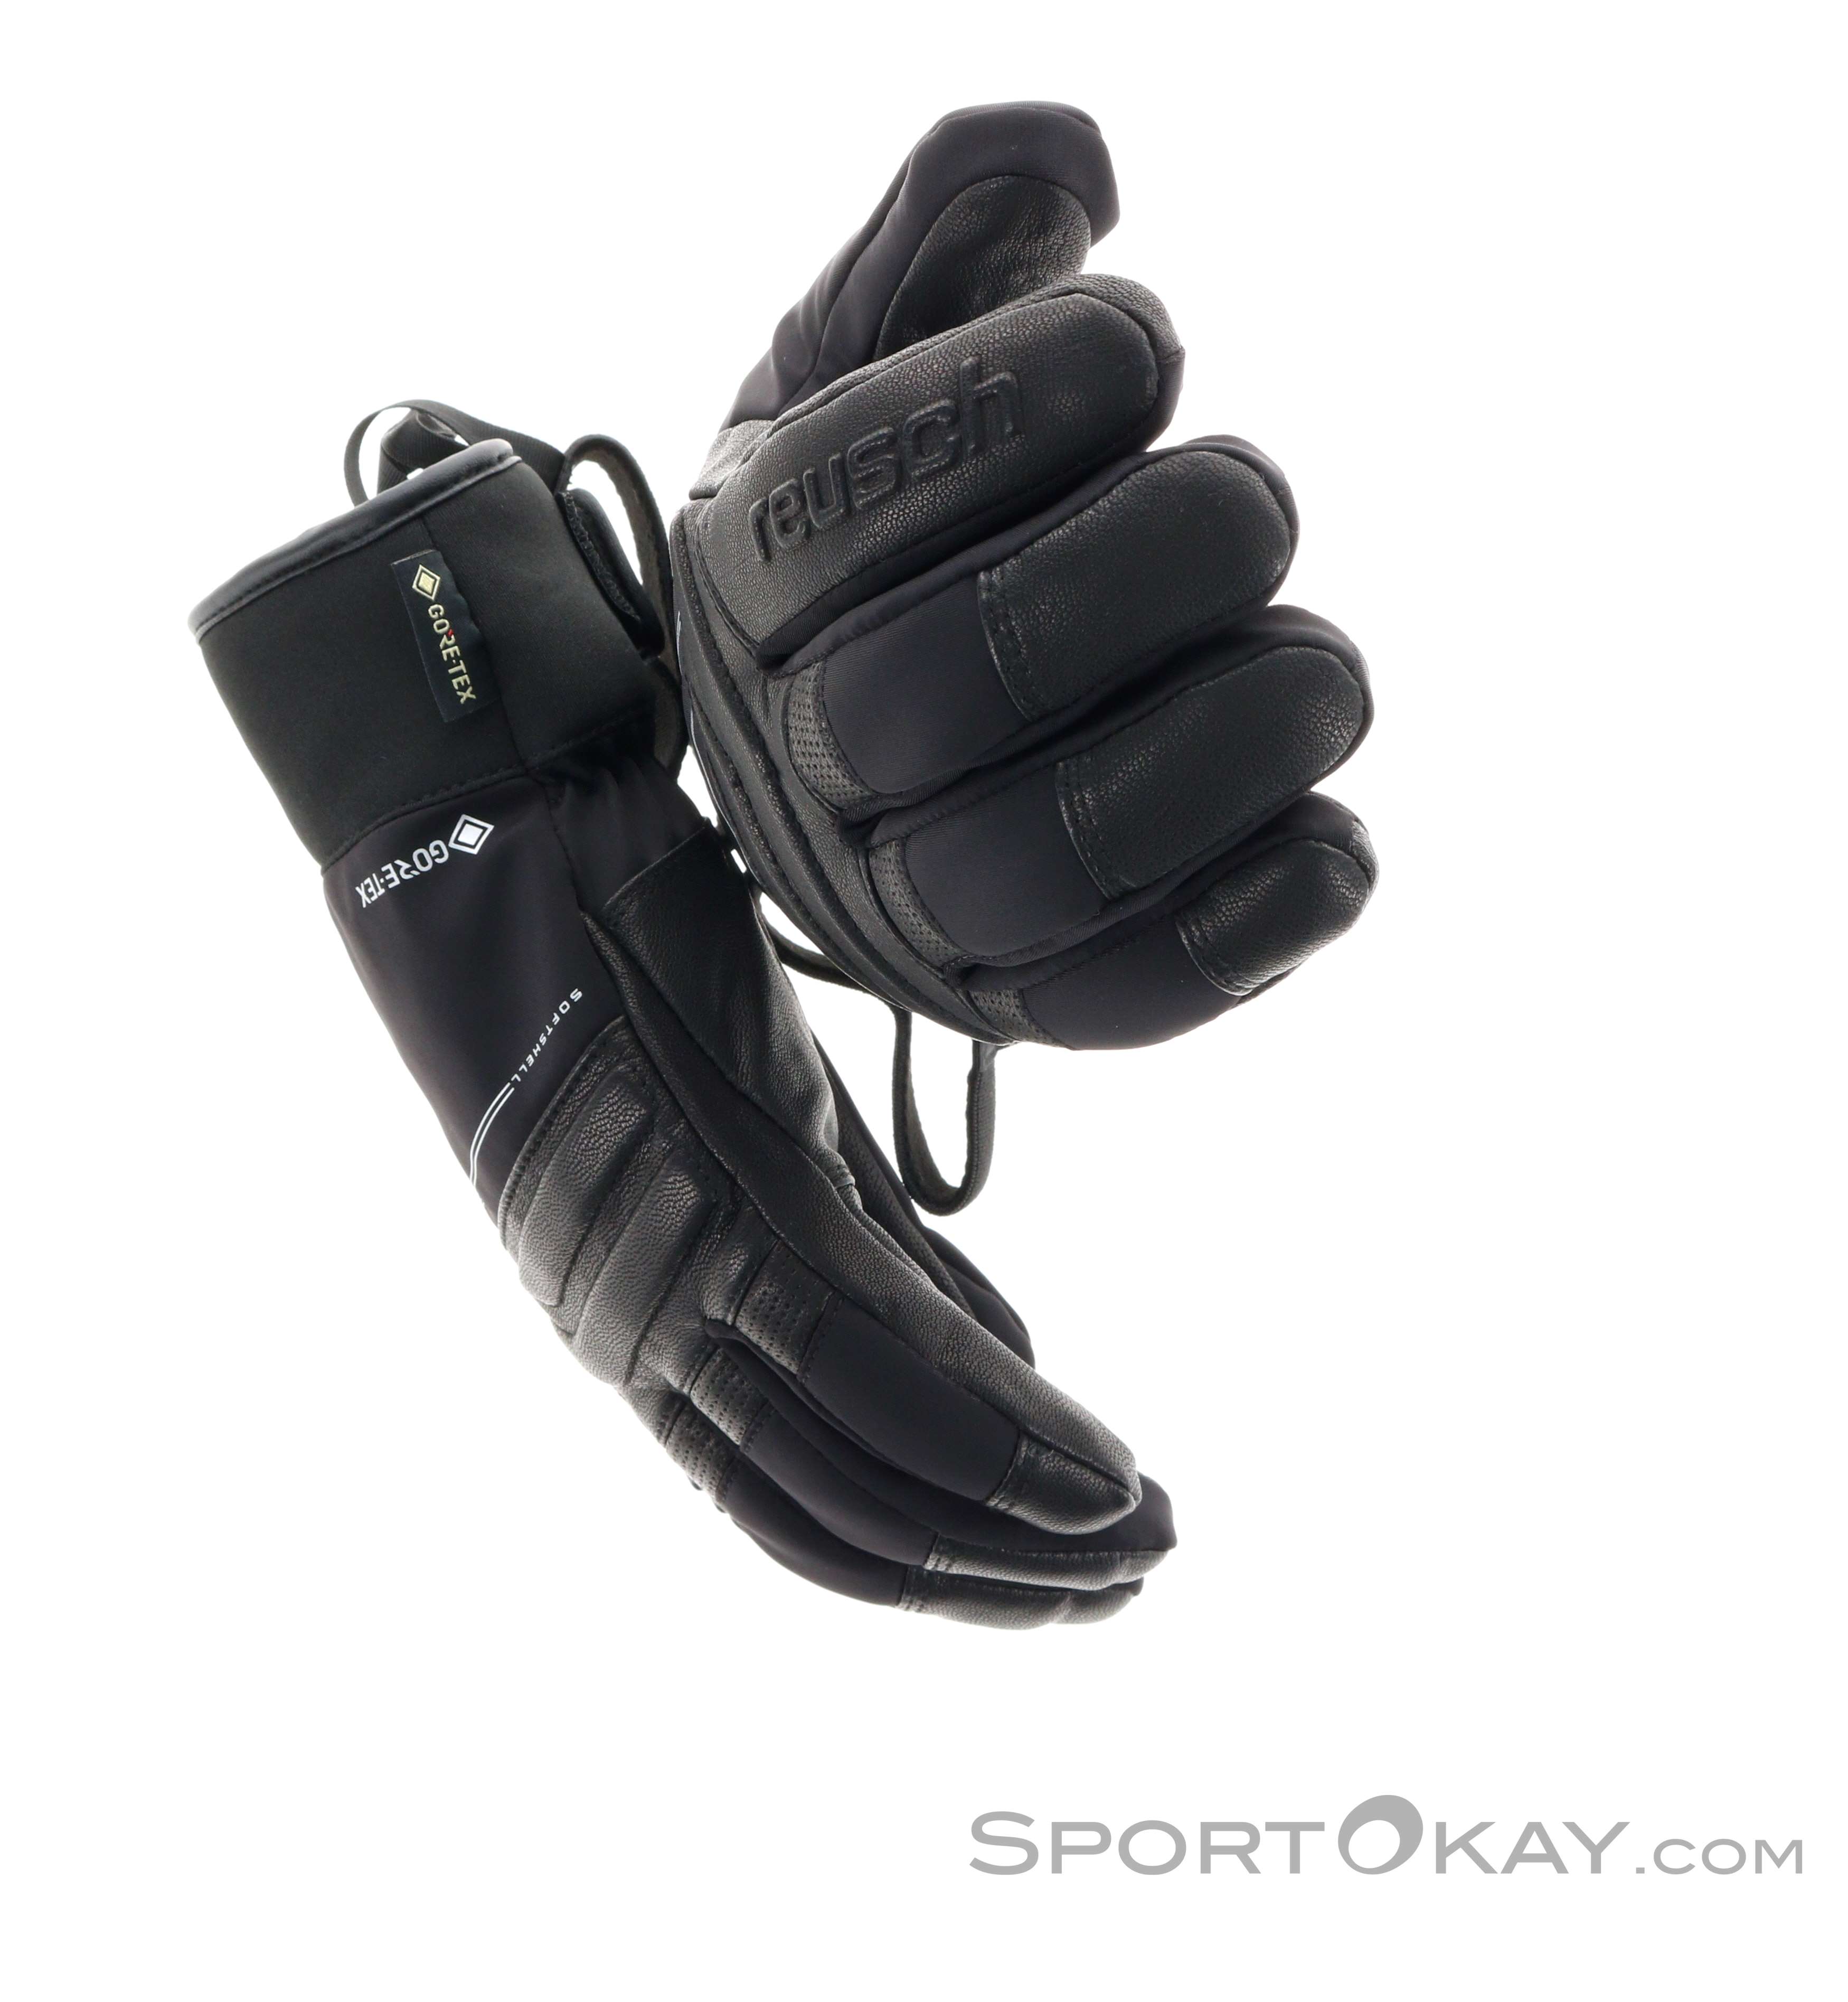 Reusch Jupiter GTX Handschuhe Alle Outdoorbekleidung - - Gore-Tex - - Outdoor Handschuhe